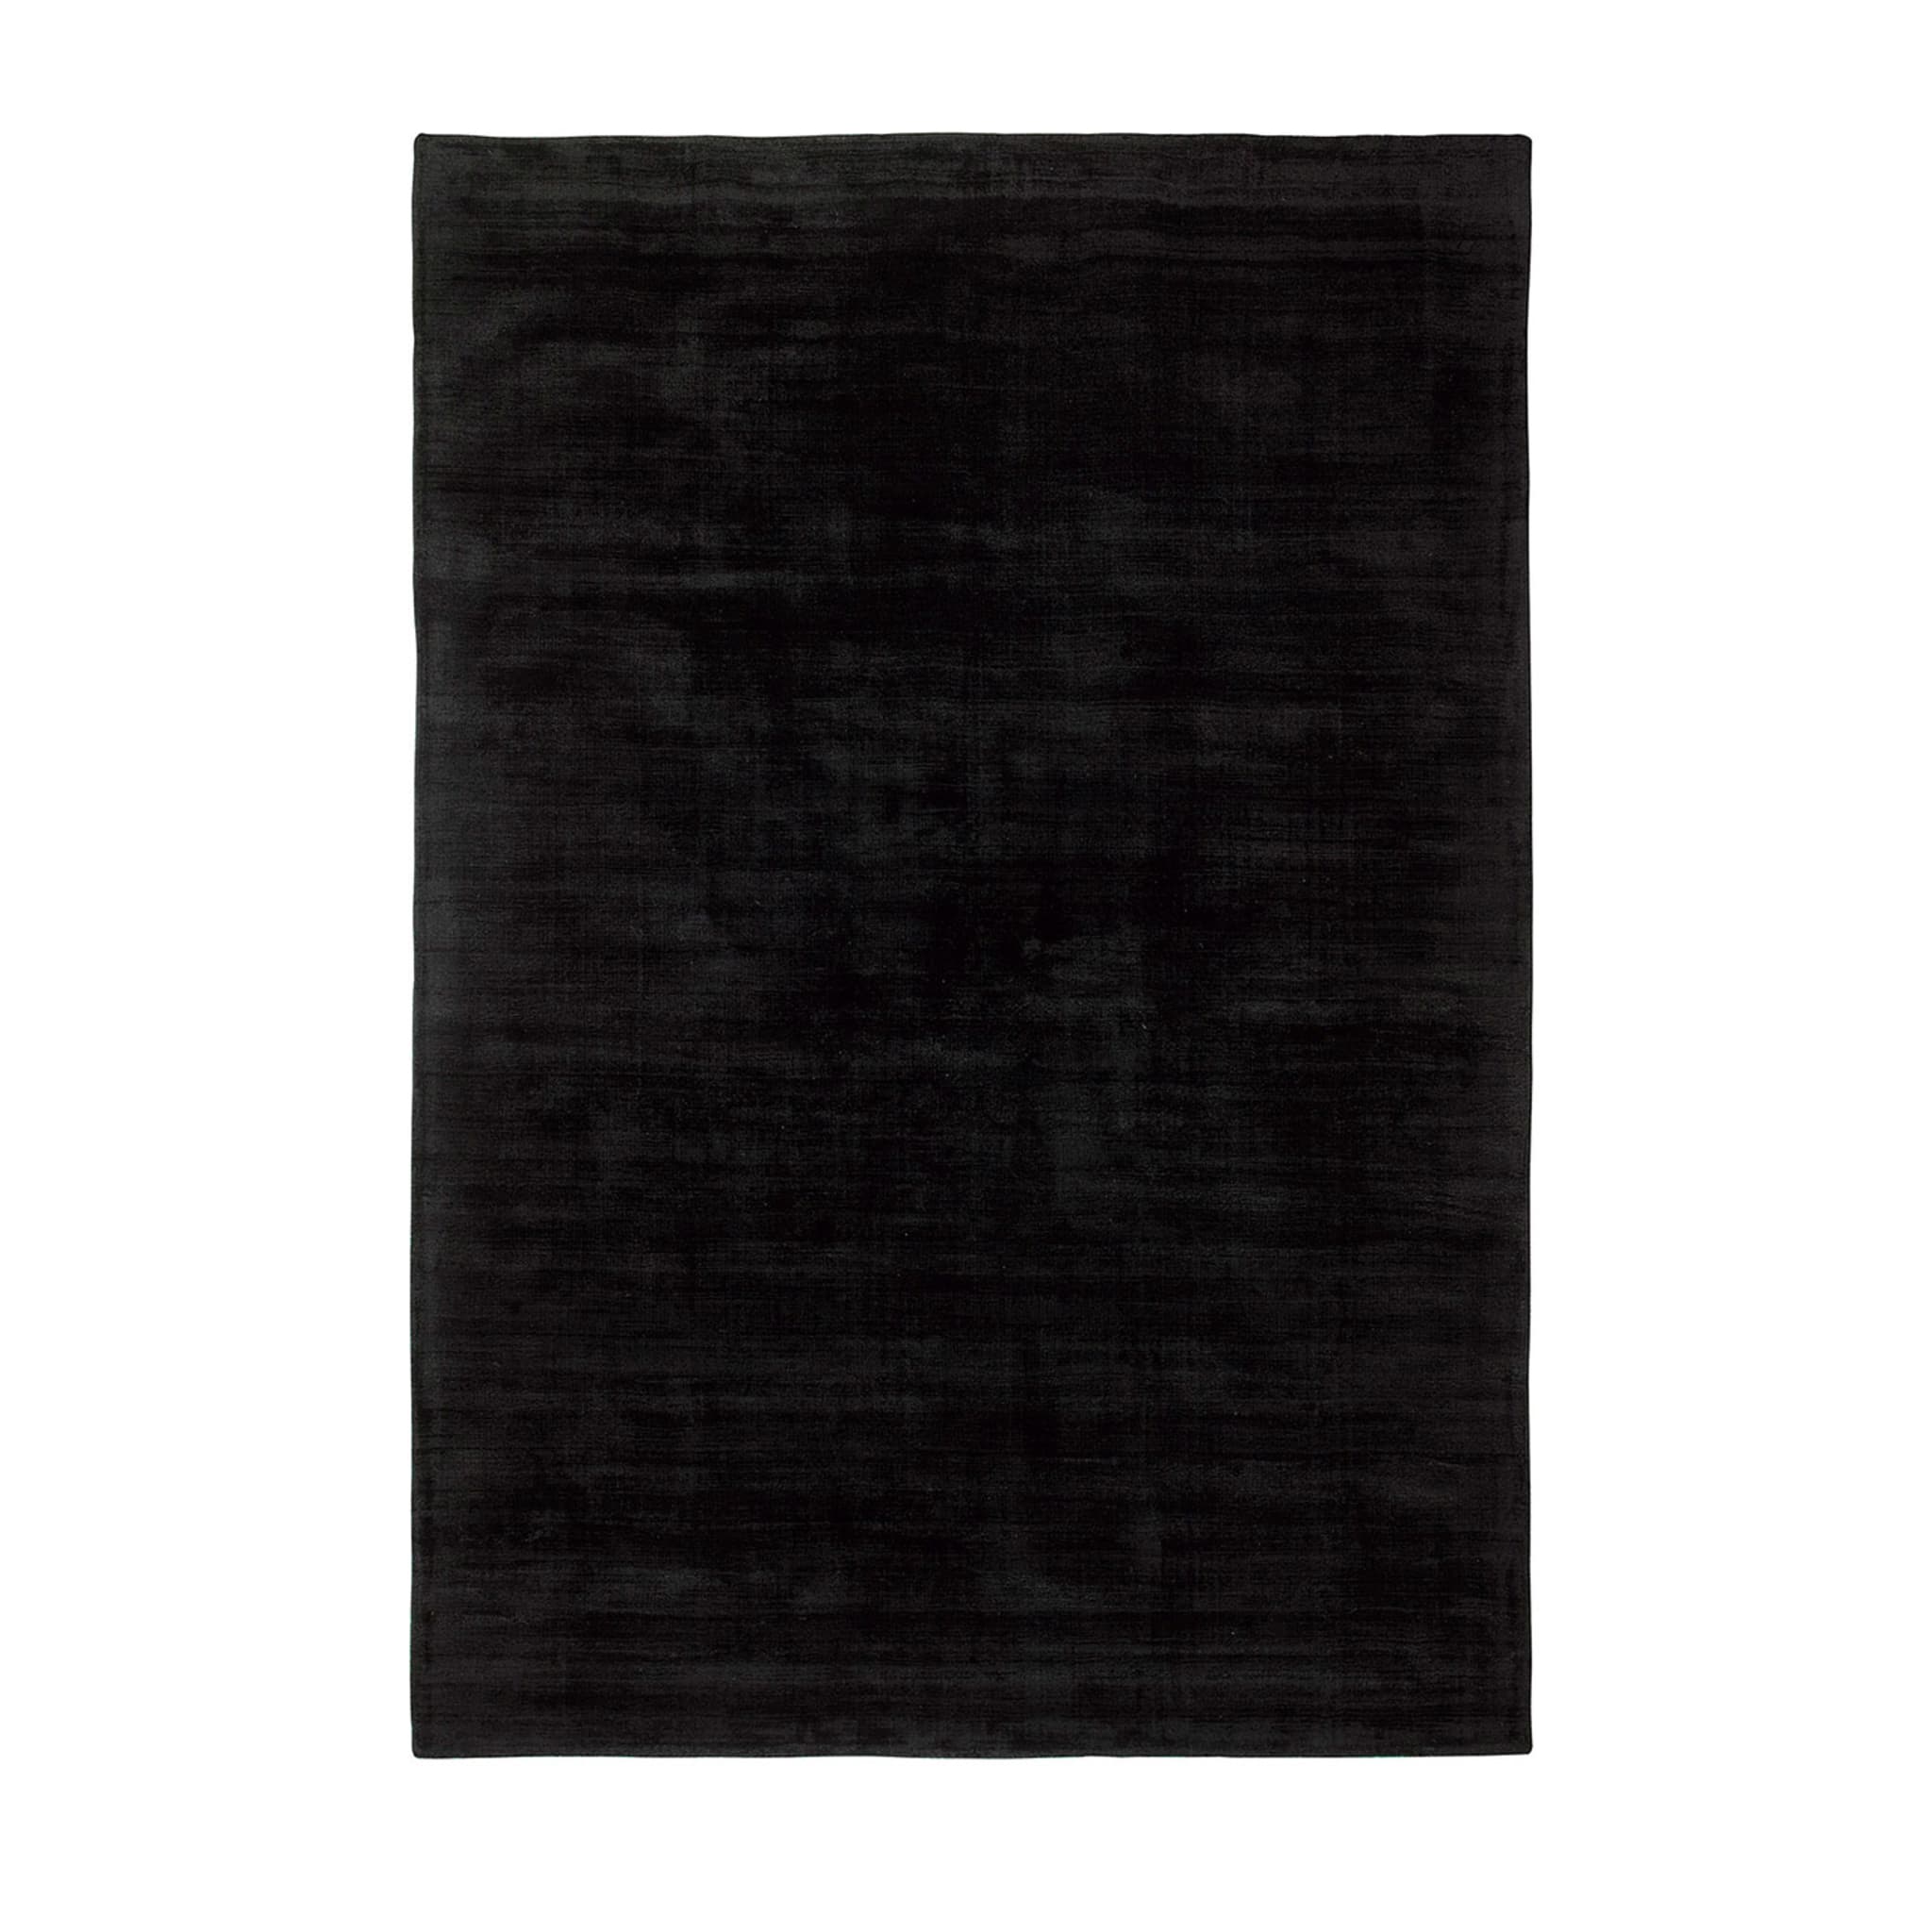 Trendiger glänzender schwarzer Teppich - Hauptansicht